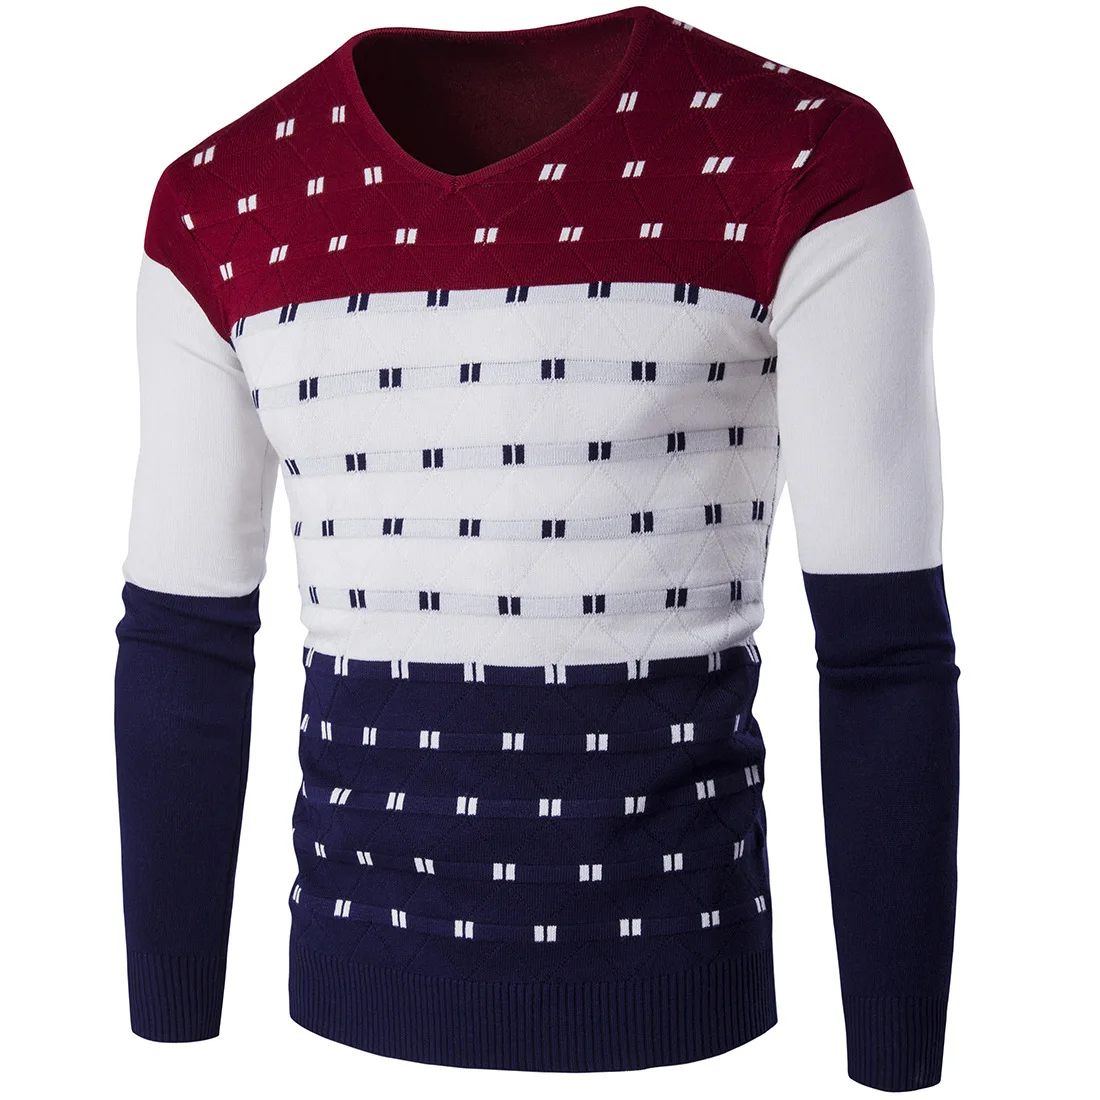 5 цветов полосатый свитер Для мужчин теплые с v-образным вырезом и длинным рукавом Зимняя Одежда для мужской моды Slim Fit печати пуловер свитер